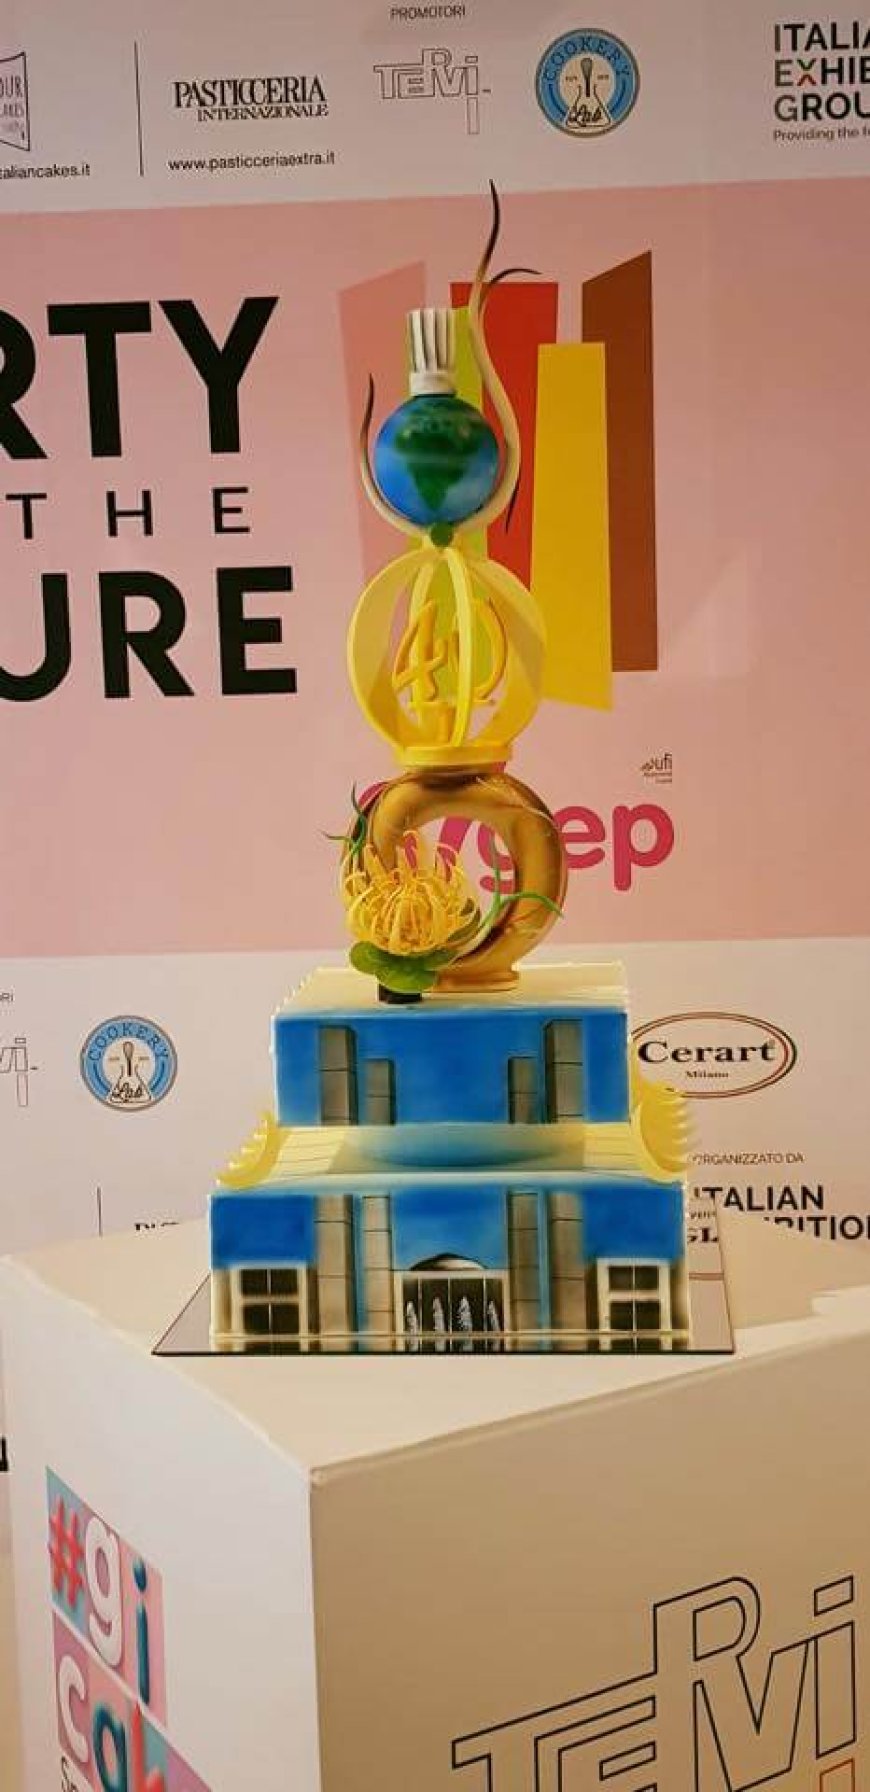 Sigep 2019: l'azienda dolciaria Fiasconaro partecipa al contest #gicakes